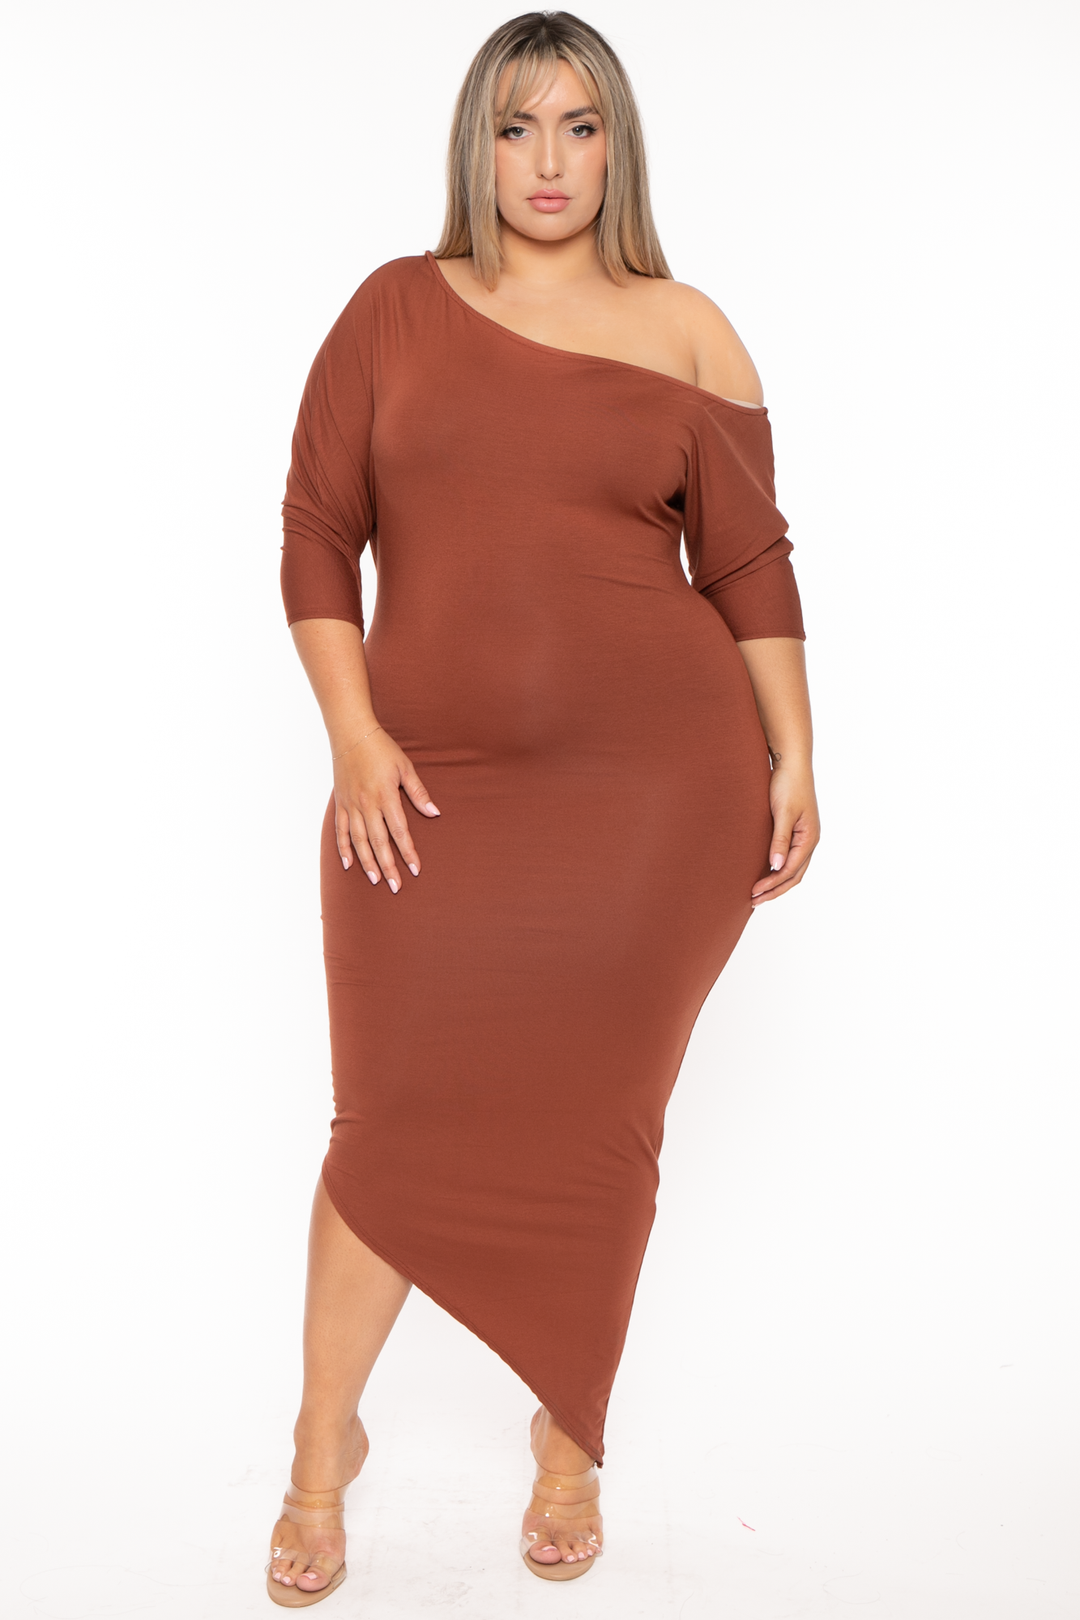 Curvy Sense Dresses 1X / Brown Plus Size Asymmetric Knit Dress - Brown